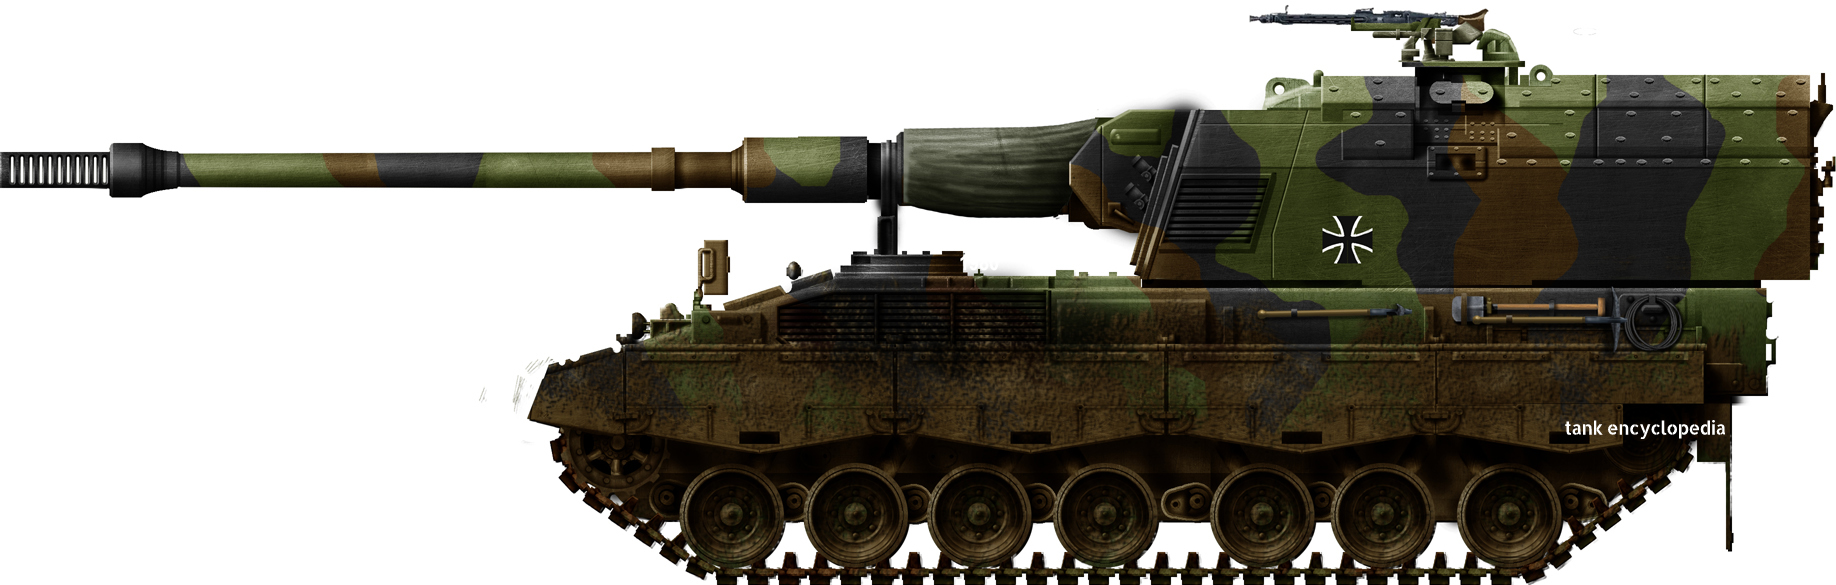 Panzerhaubitze 2000 Howitzer